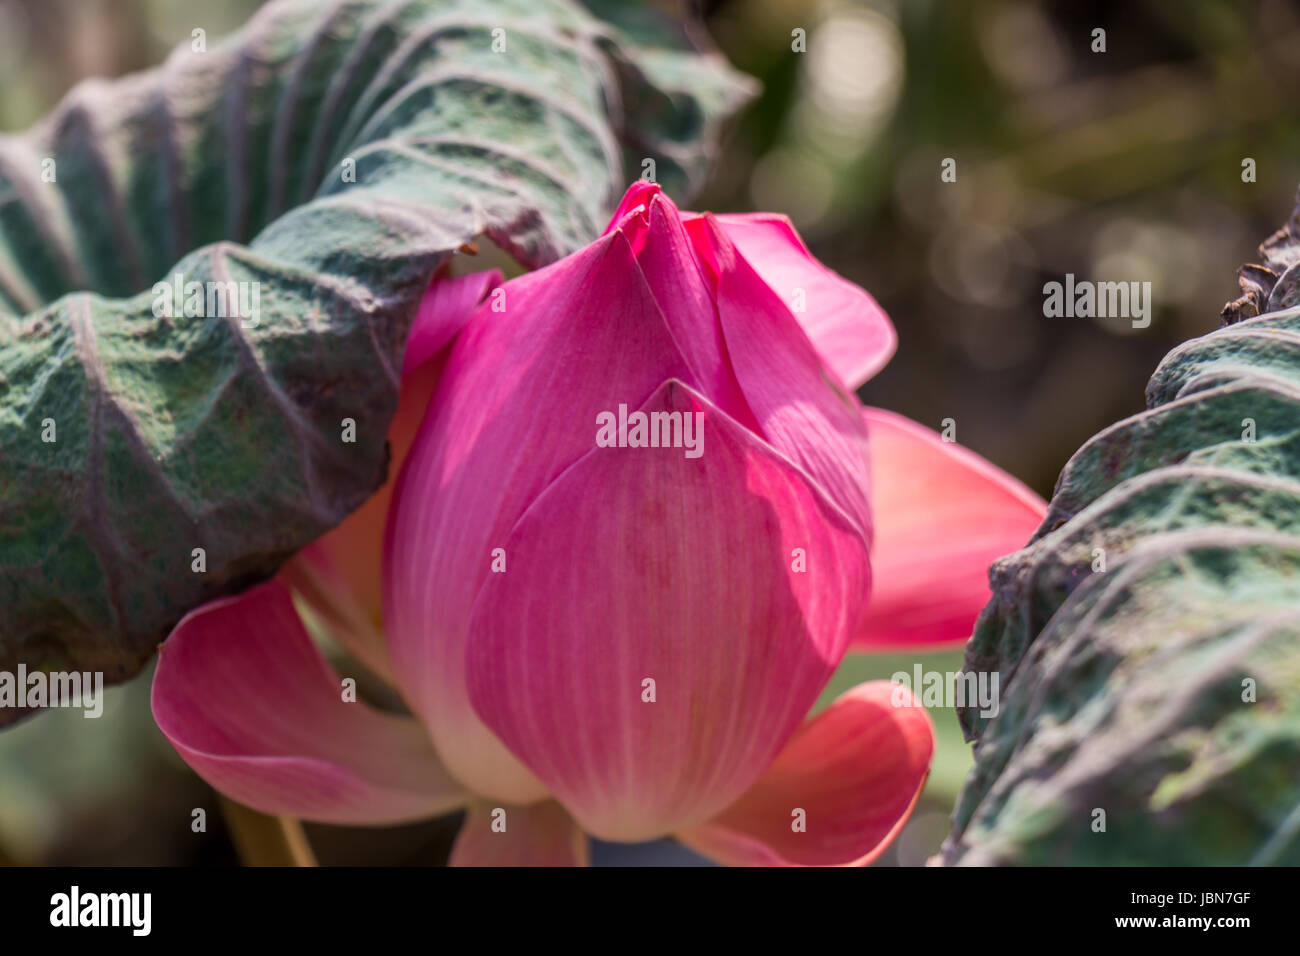 Lilie Seerose mit einer grosse Knospe Zierpflanze im Sommer im Freien Banque D'Images